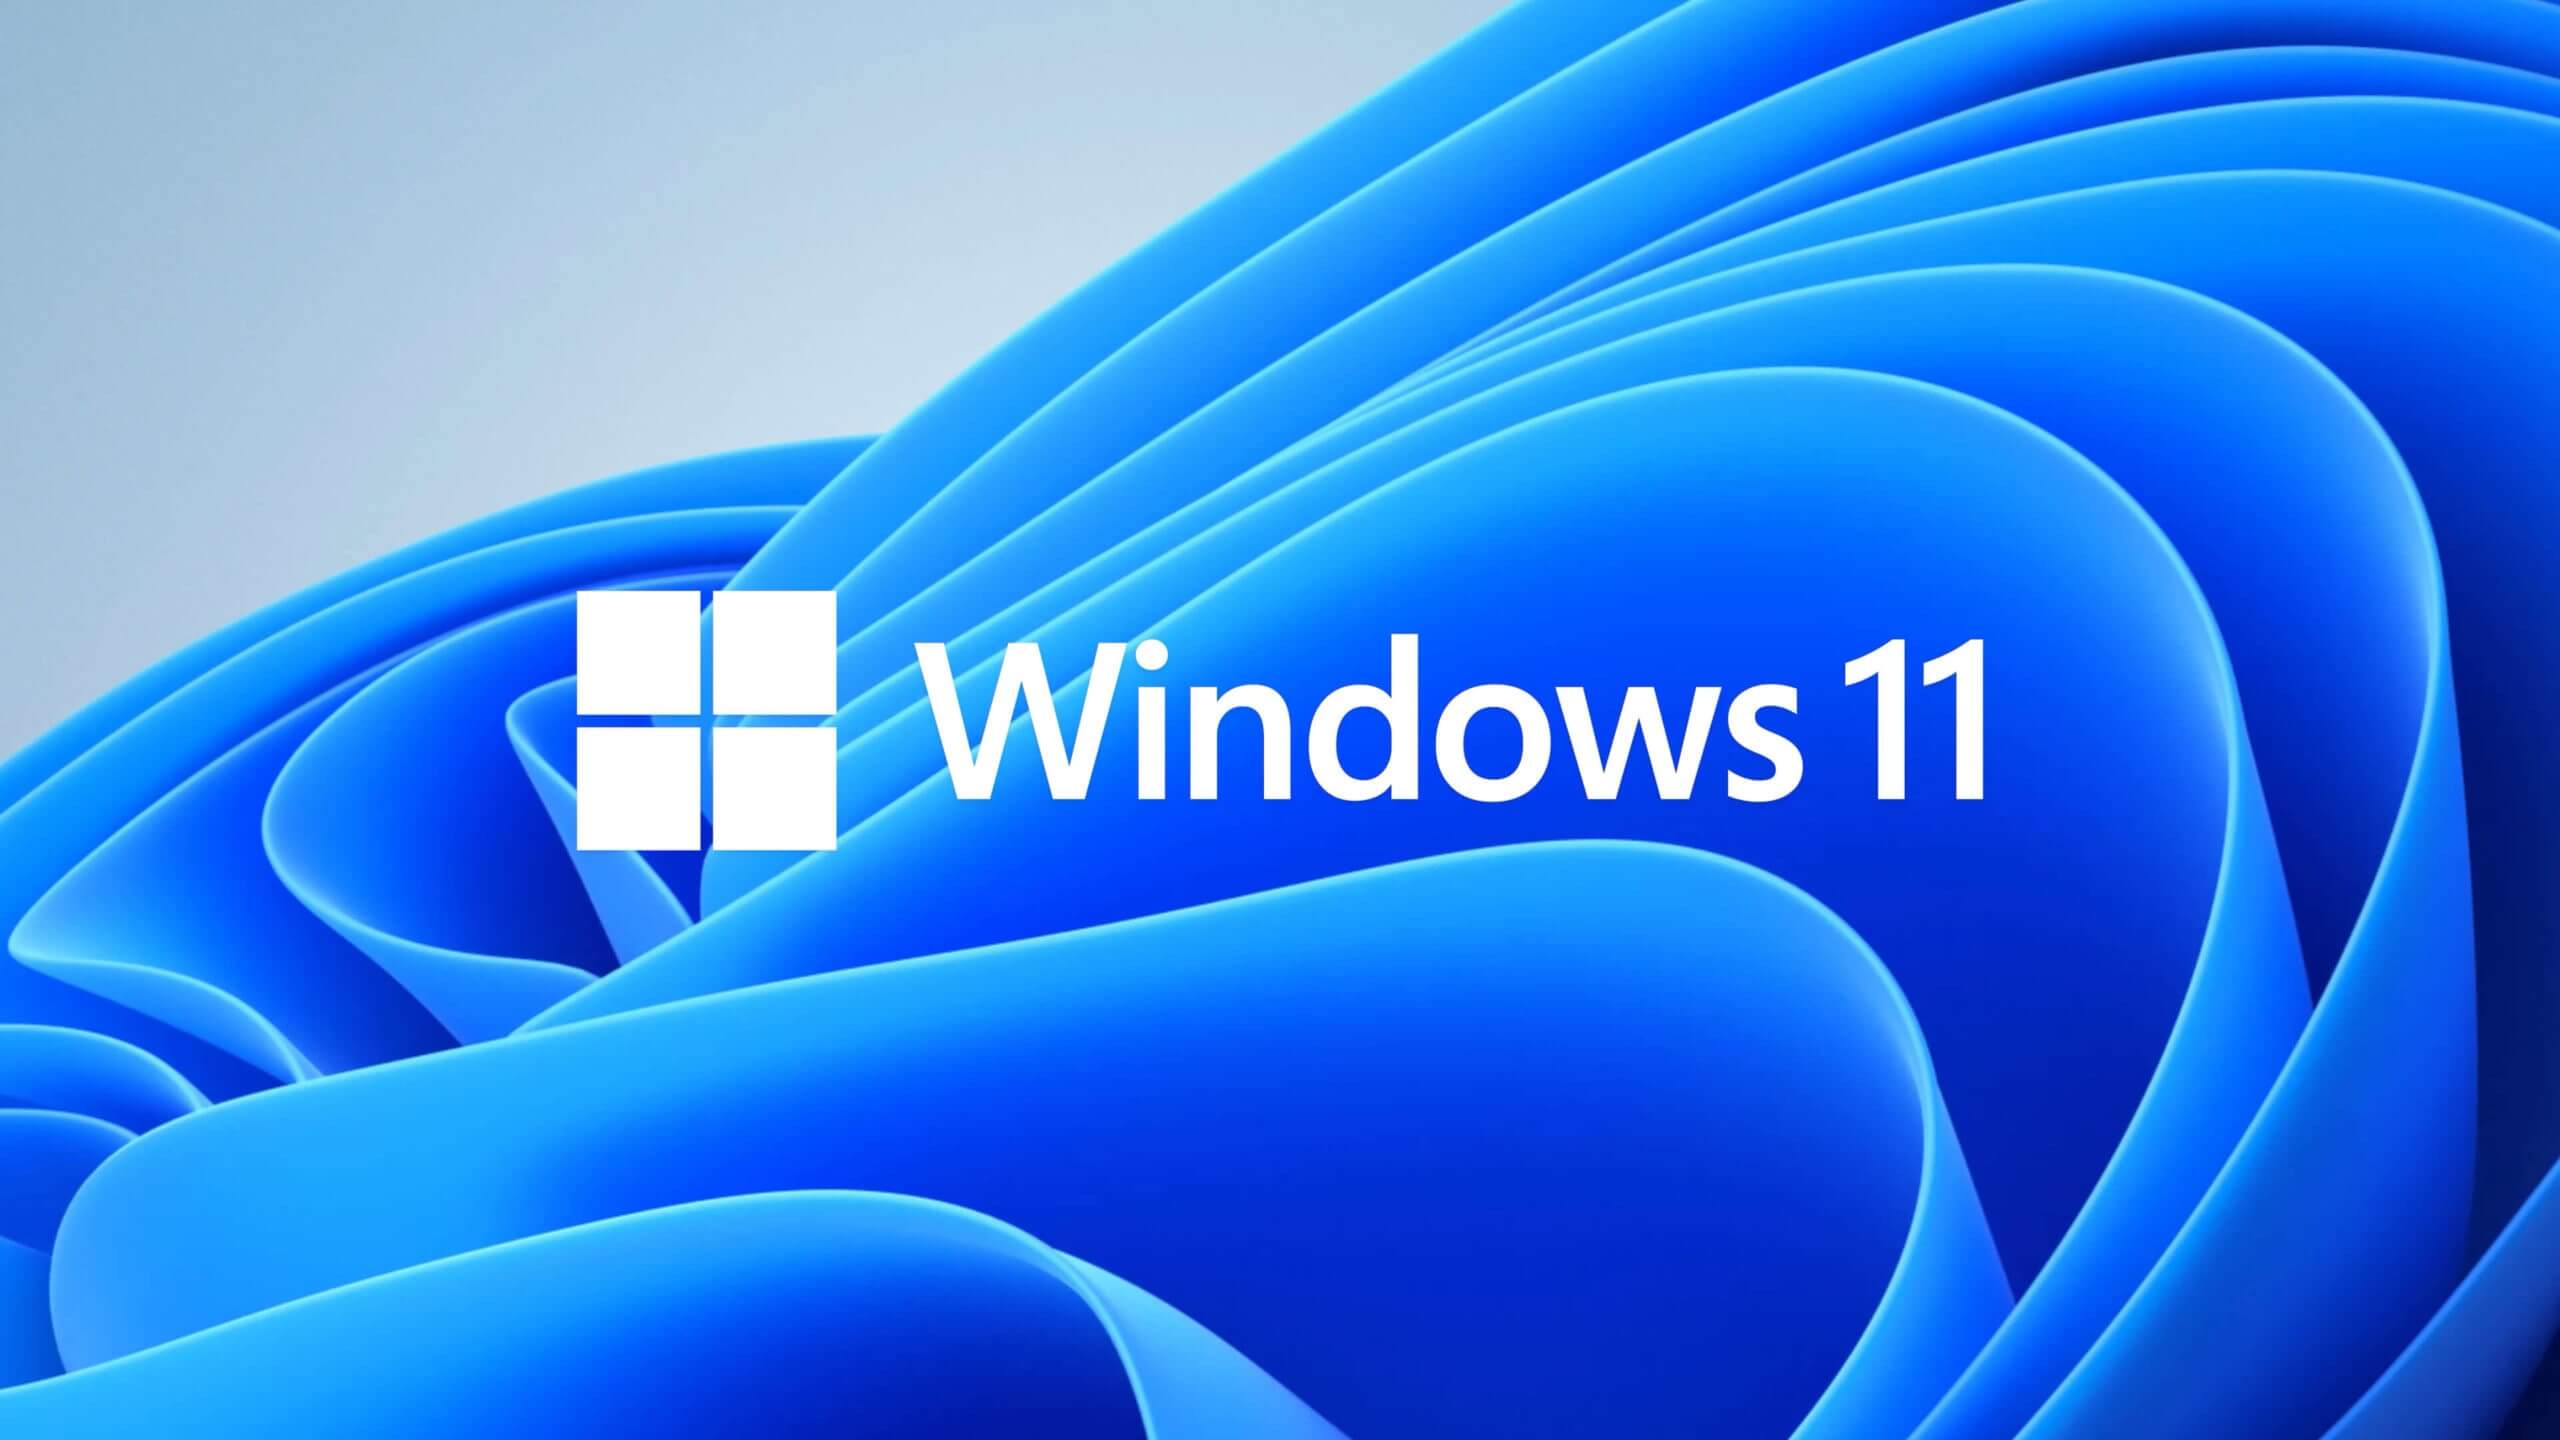 Ra mắt được 3 tháng, mới chỉ có 0.21% người dùng Windows 10 cập nhật lên Windows 11